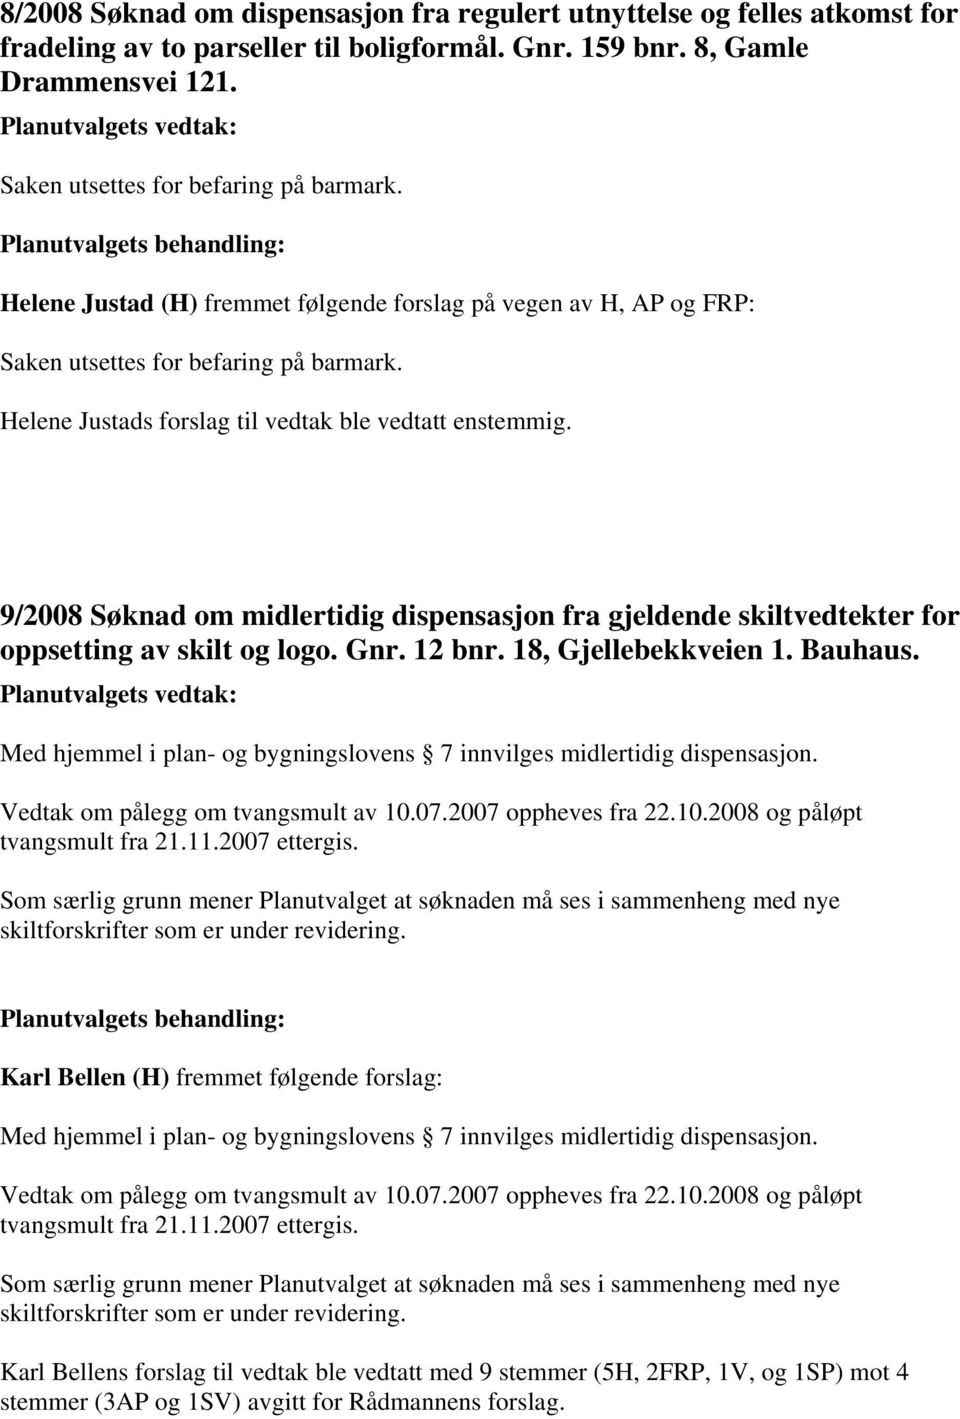 9/2008 Søknad om midlertidig dispensasjon fra gjeldende skiltvedtekter for oppsetting av skilt og logo. Gnr. 12 bnr. 18, Gjellebekkveien 1. Bauhaus.